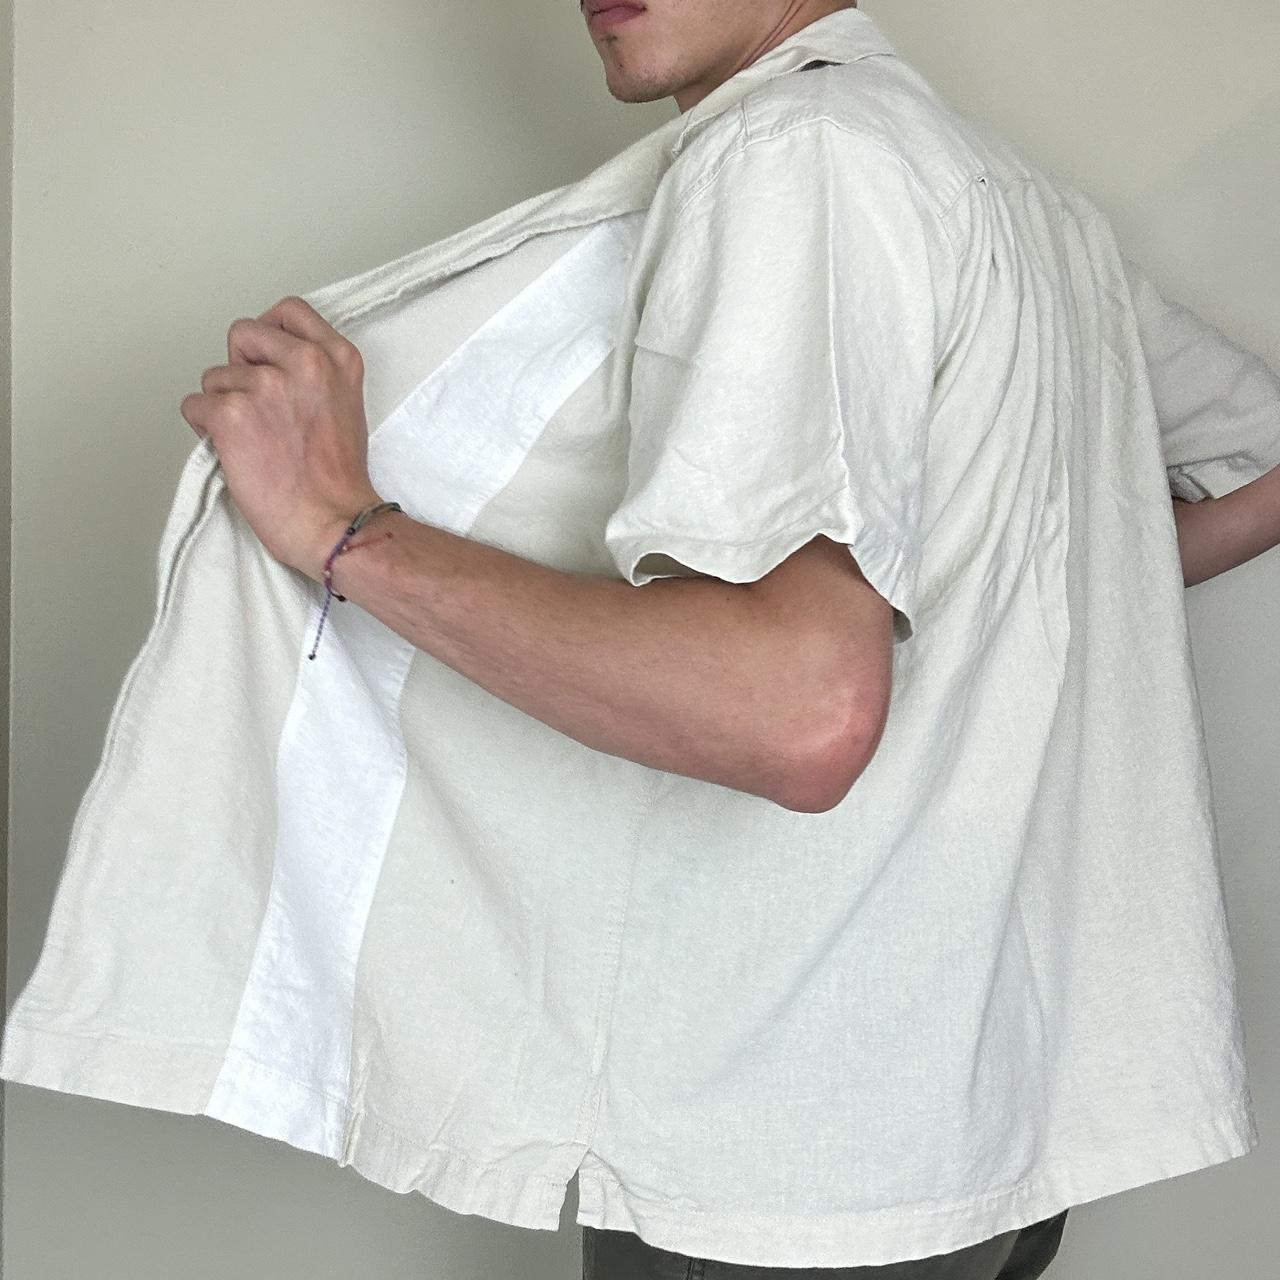 Haggar Men's White and Cream Shirt (2)